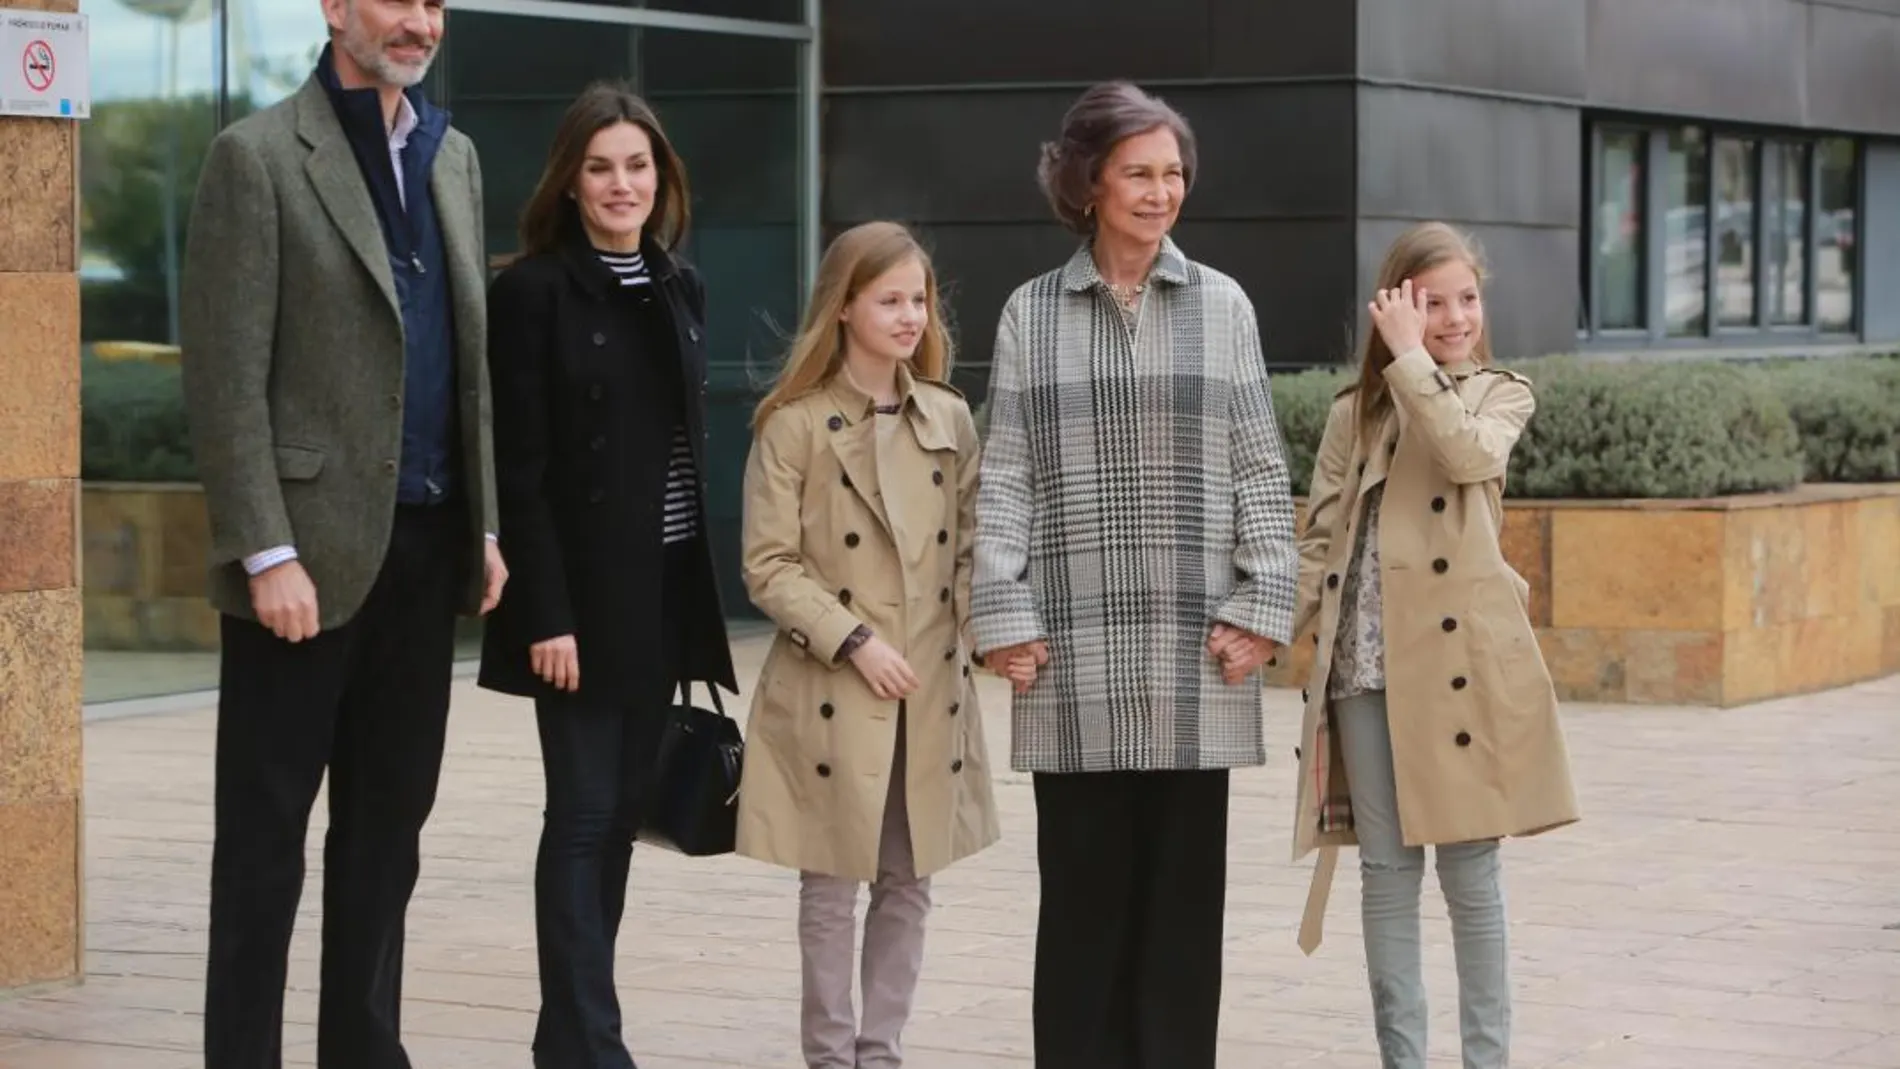 Los Reyes acompañados por la reina Sofía, la princesa Leonor y la infanta Sofía a su llegada hoy a la Clínica Universitaria La Moraleja